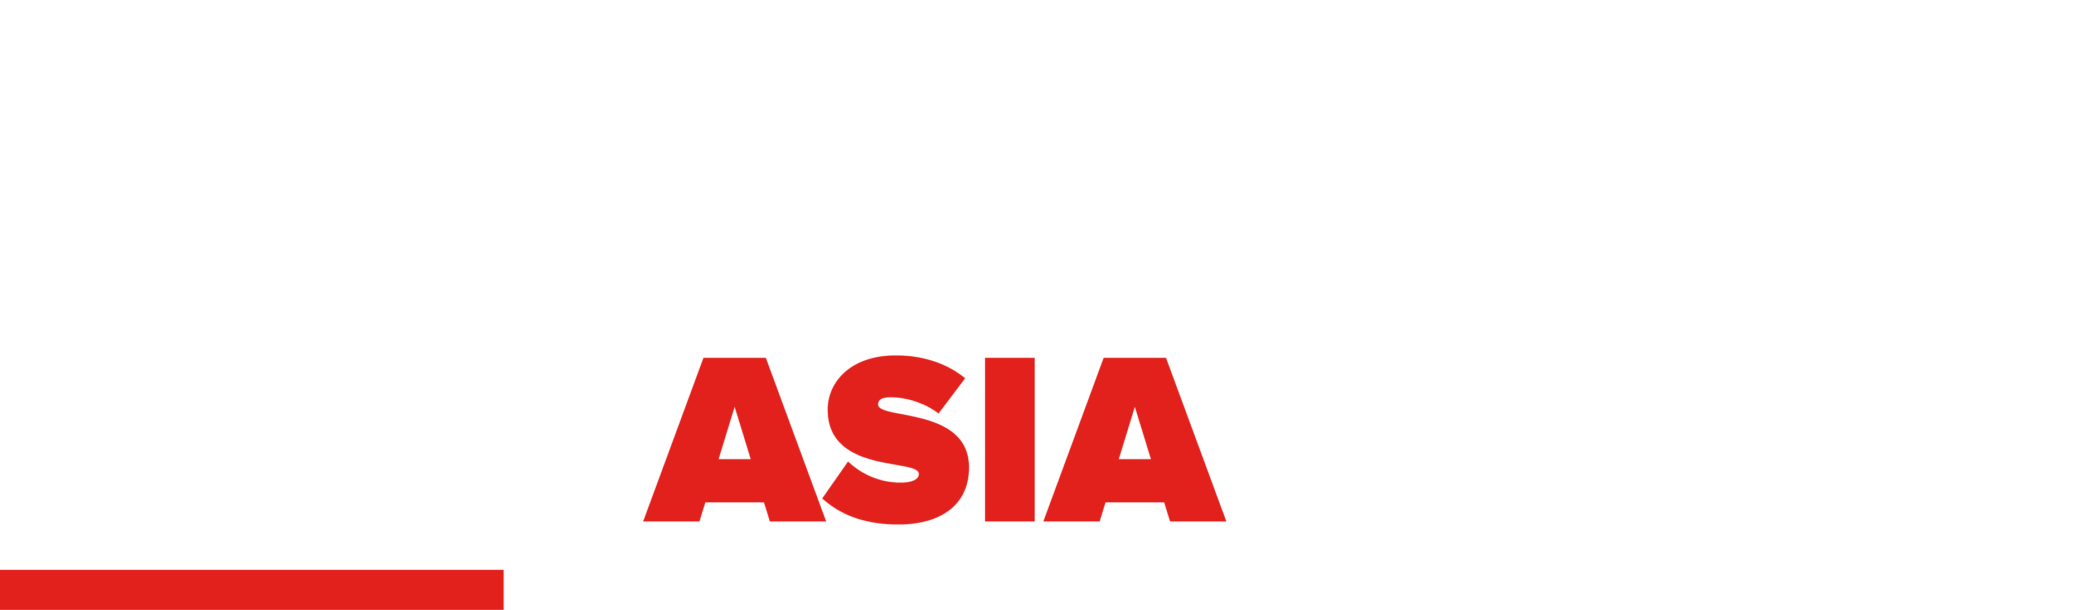 STAHLS Asia-white